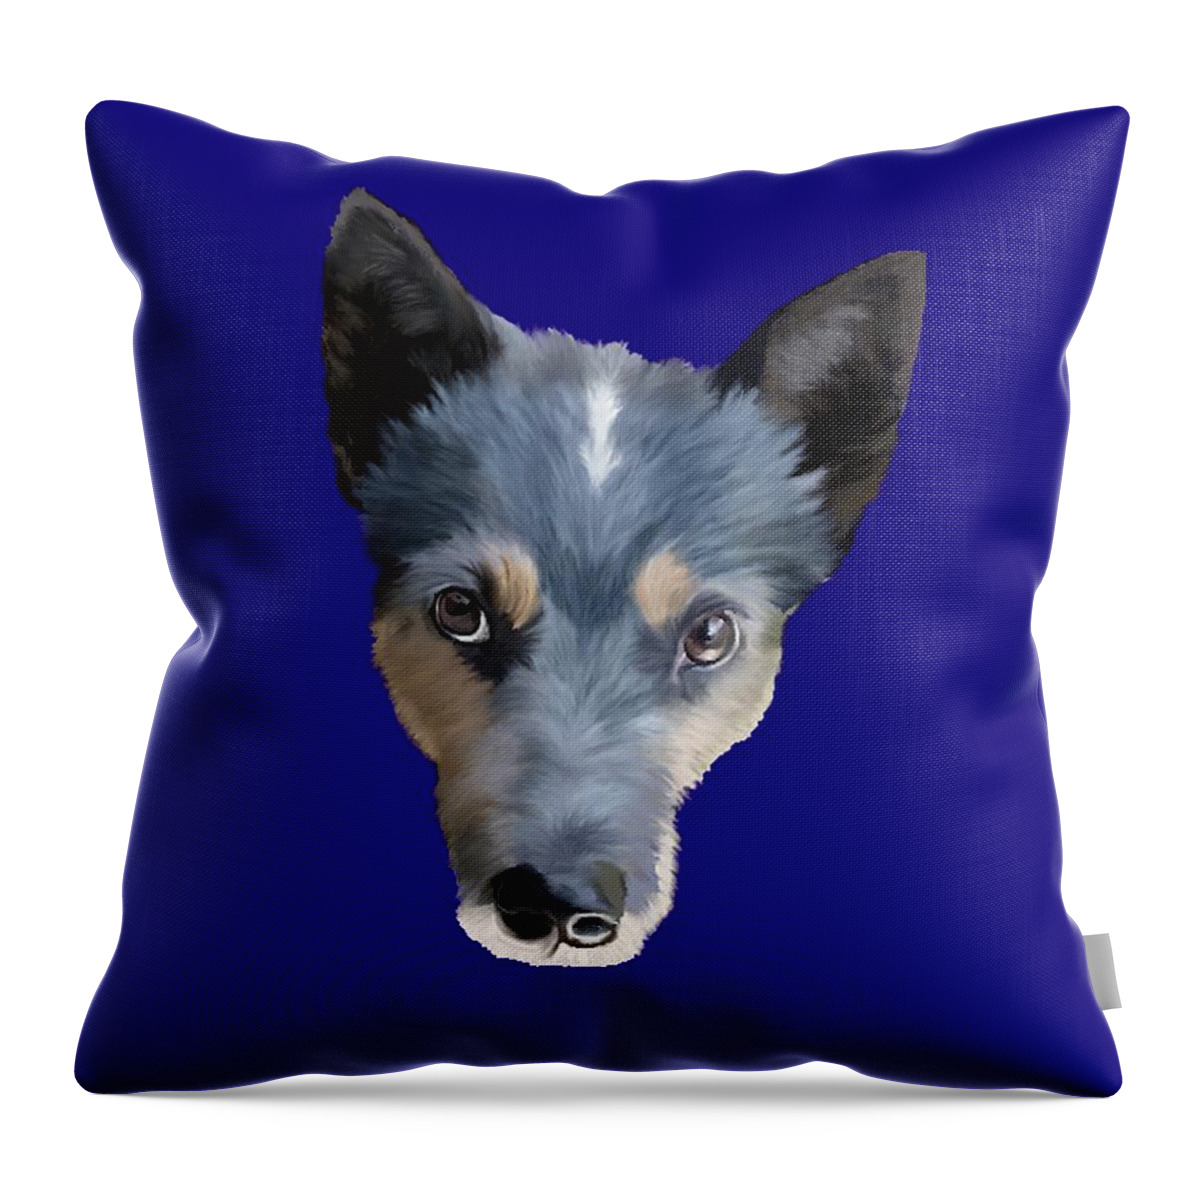 Blue Heeler Throw Pillow featuring the drawing Blue Heeler / Australian Cattle Dog by ArtistsQuest